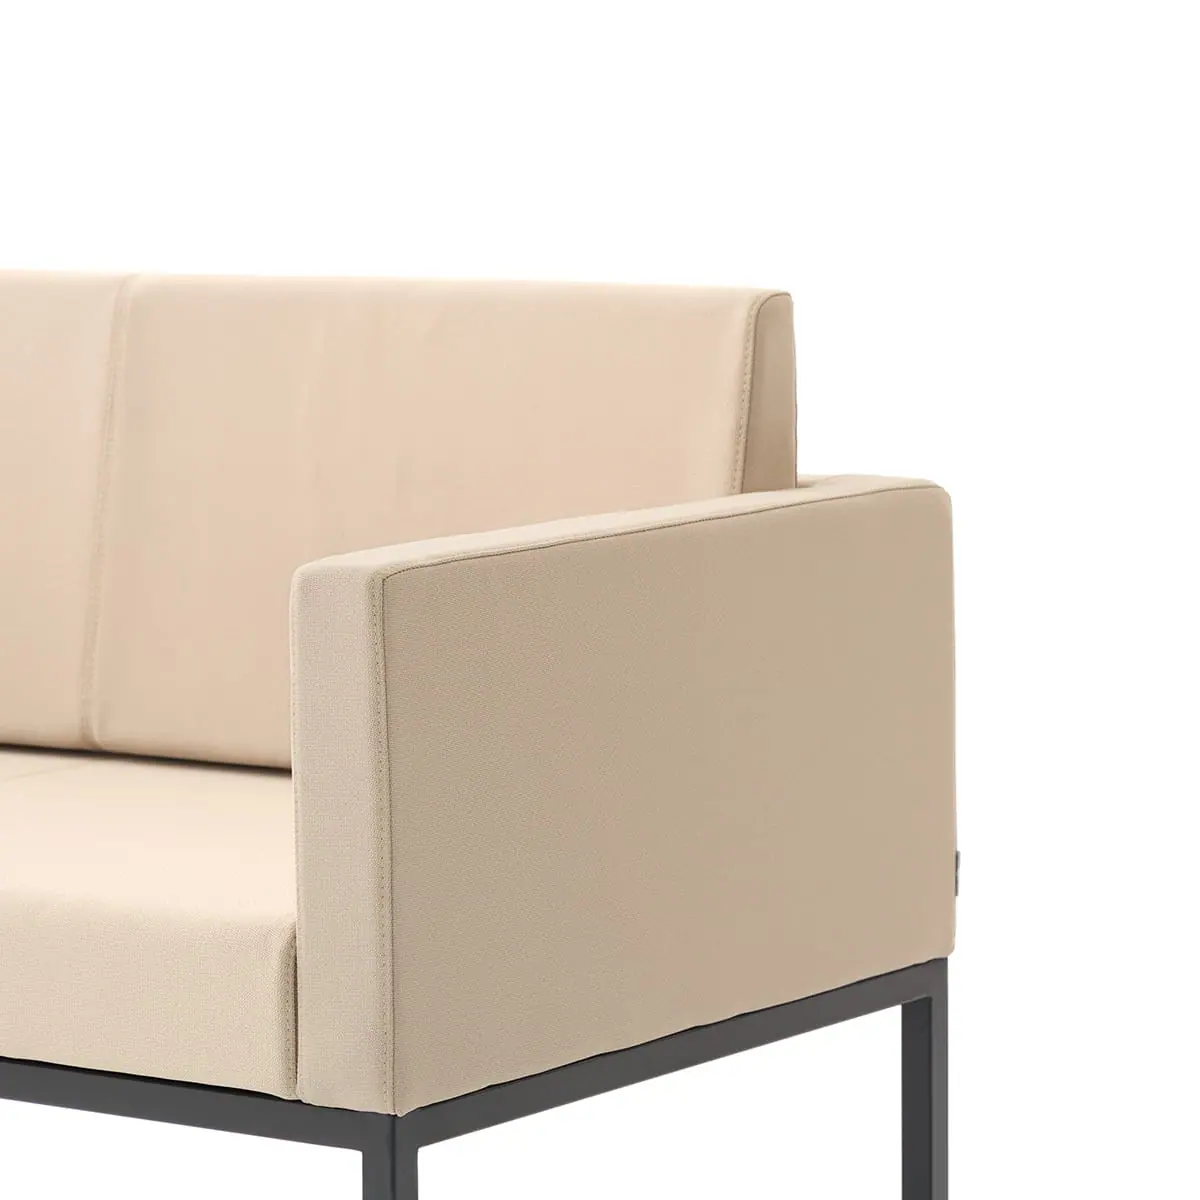 delaoliva-cubik-soft-lounge-seating-008